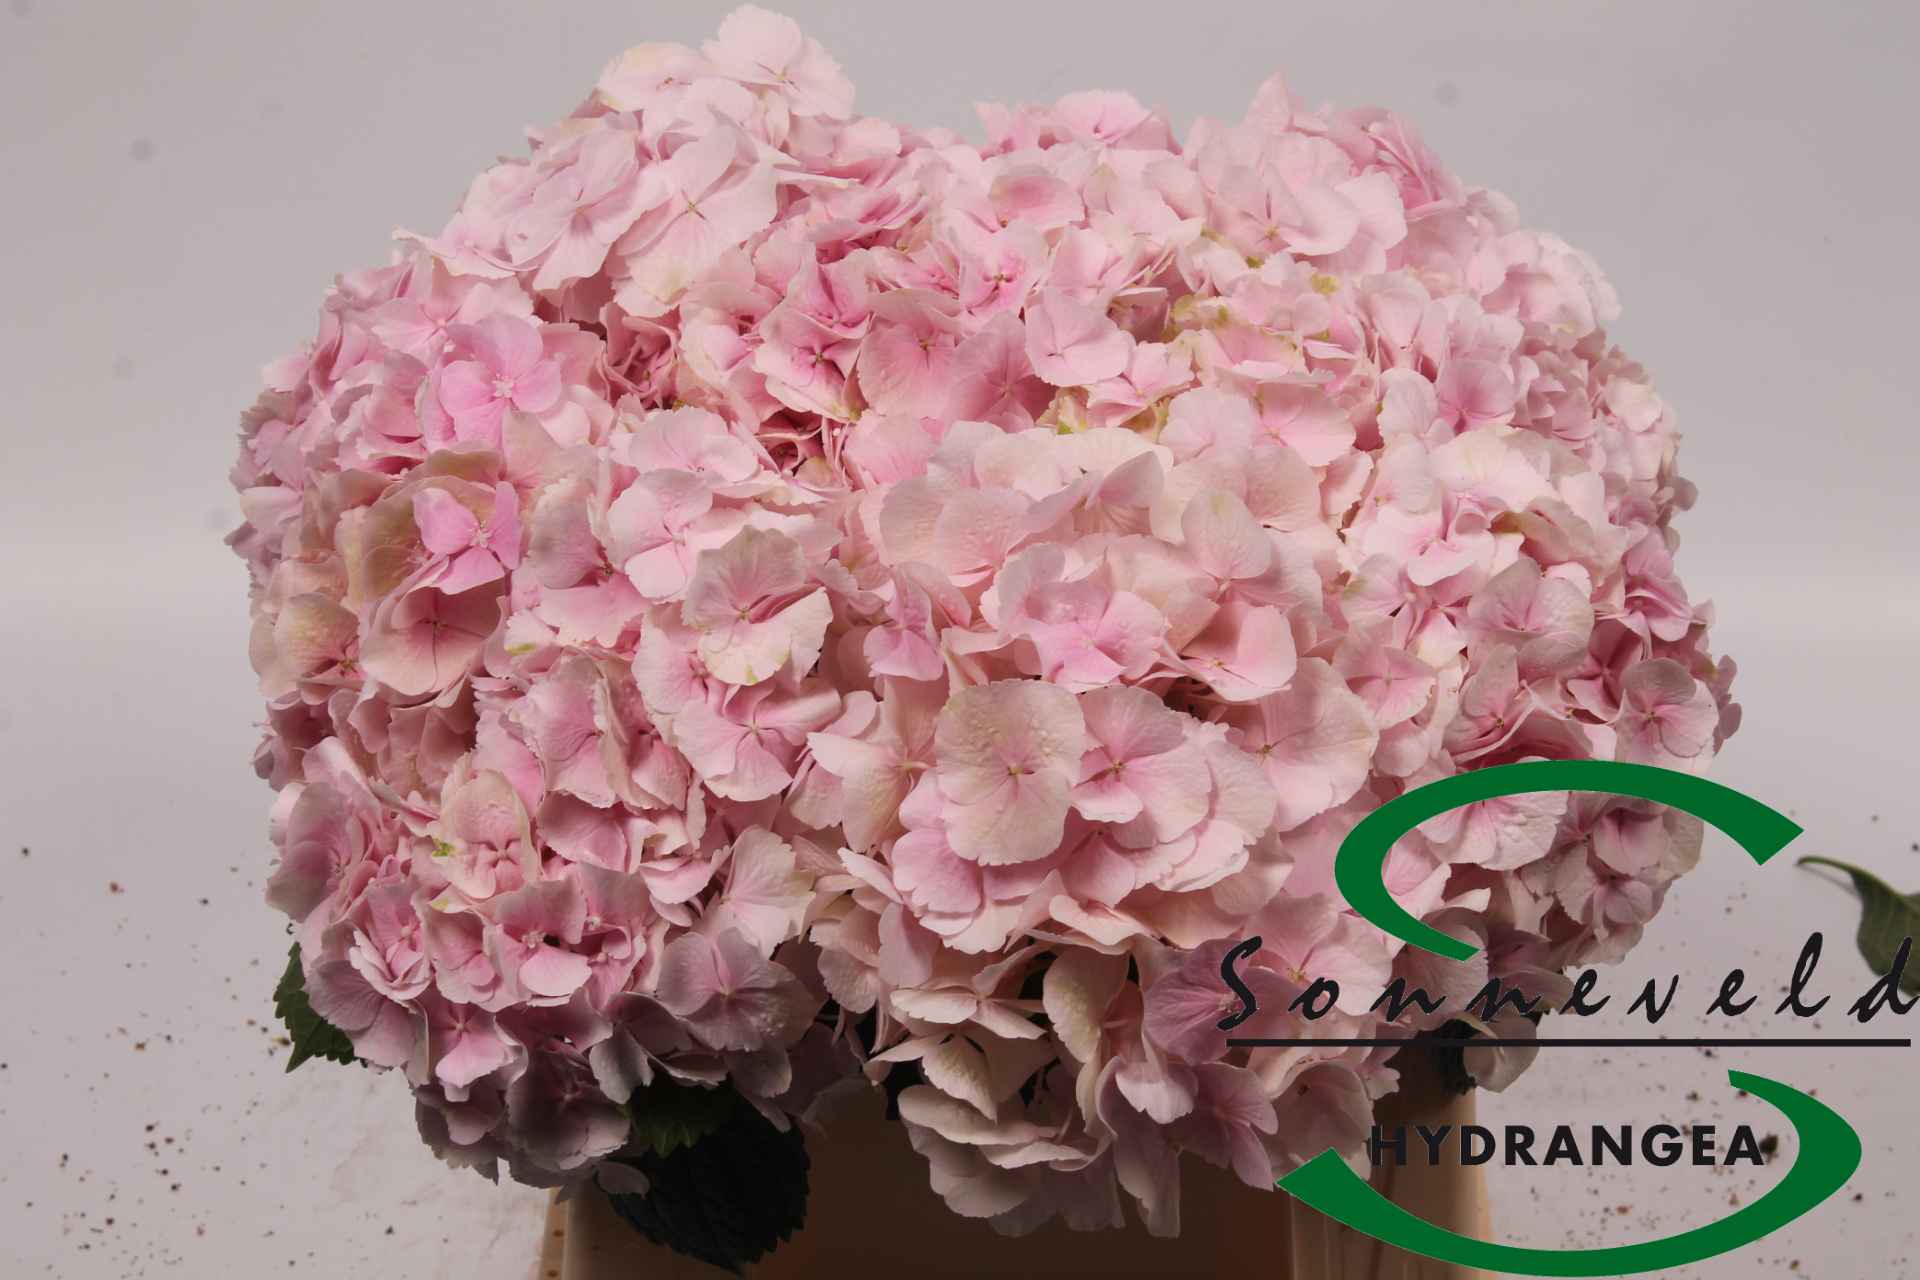 Срезанные цветы оптом Hydrangea verena classic old pink от 10шт из Голландии с доставкой по России